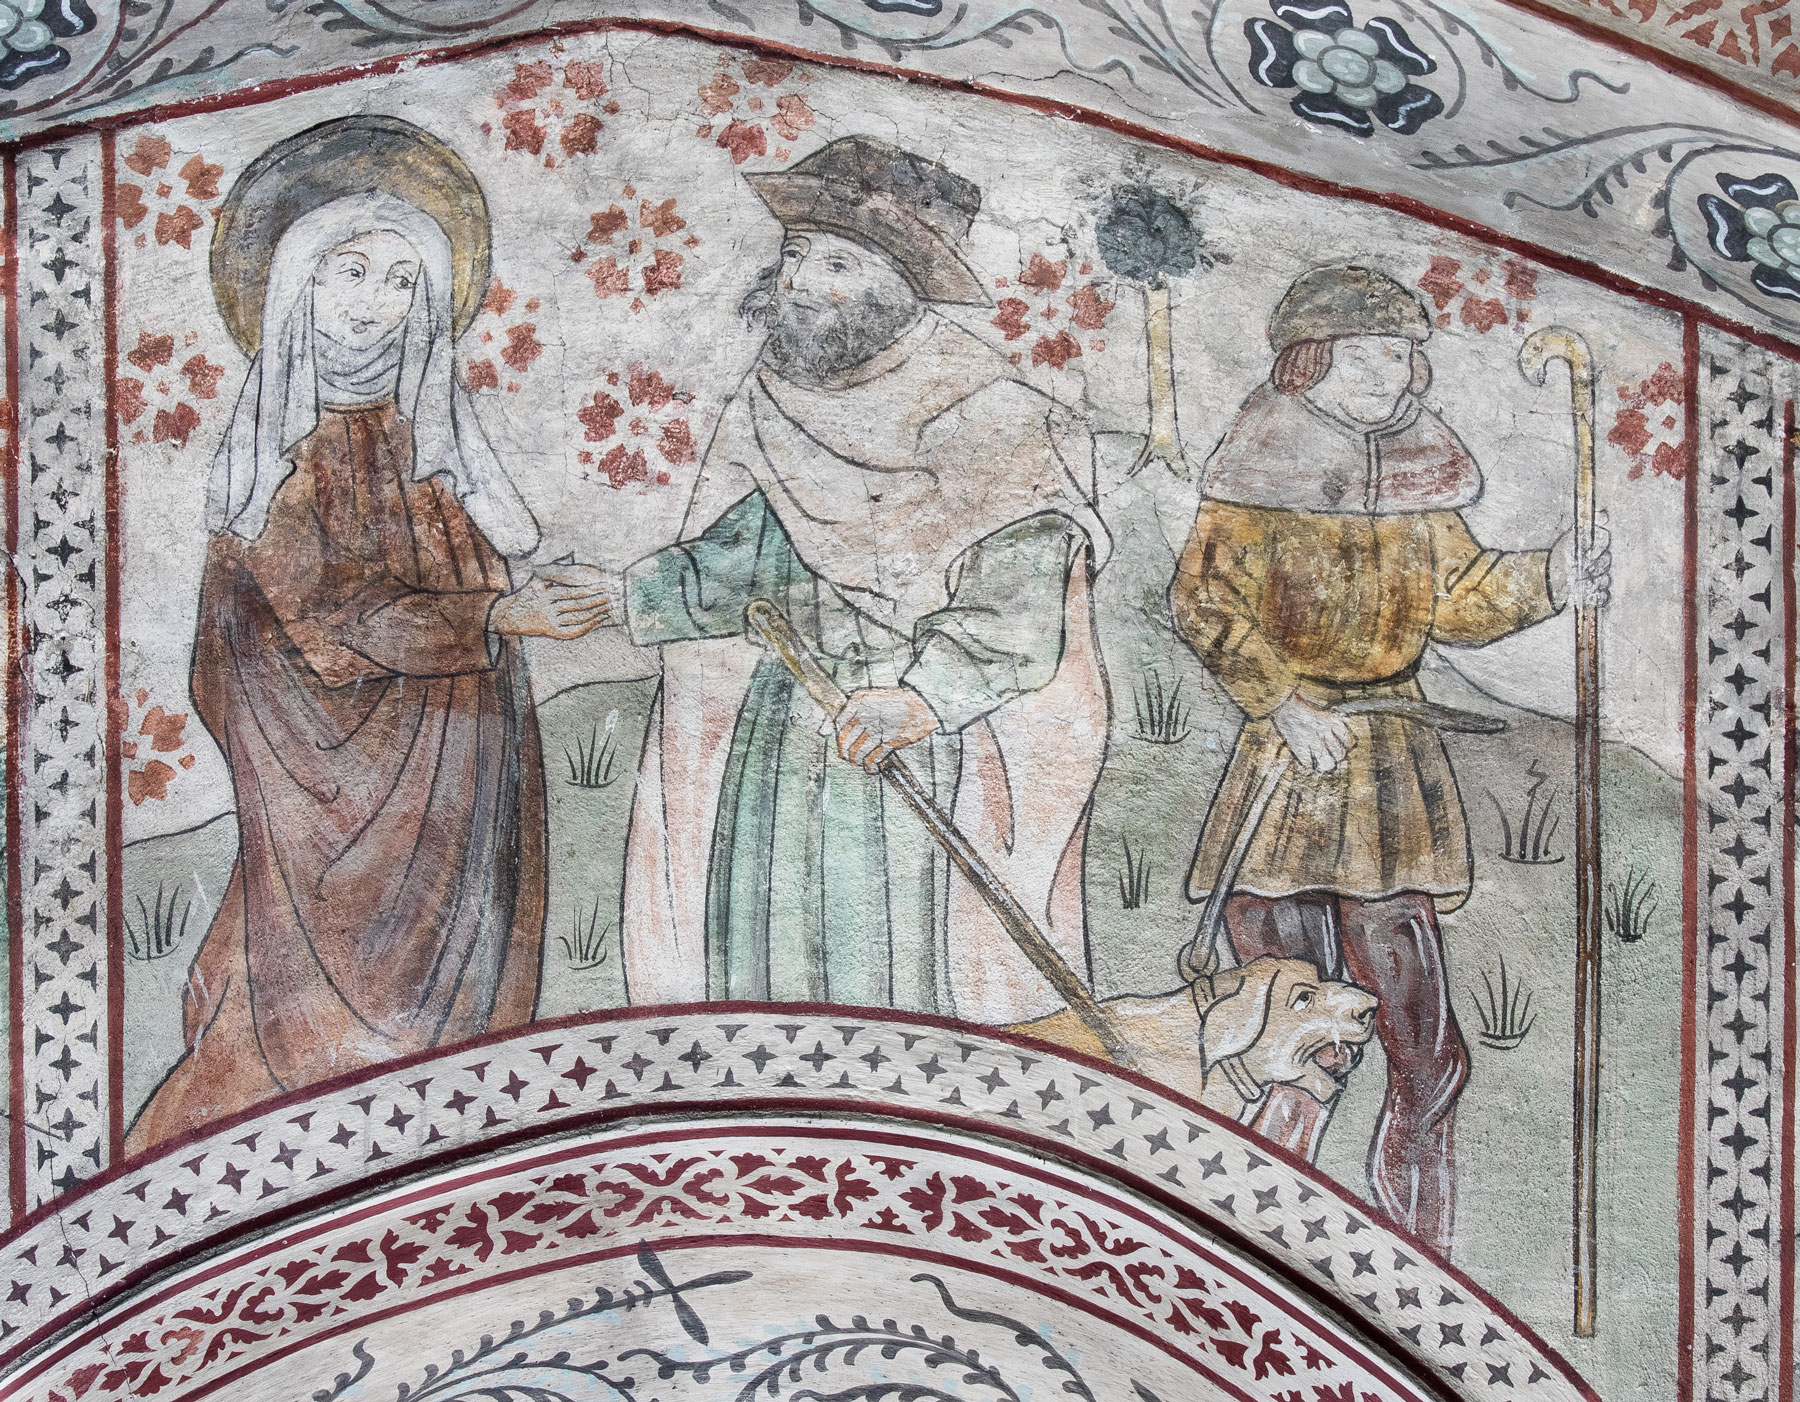 Kvinna med gloria vid sidan om en man, kanske Anna och Joakim, tillsammans med oidentifierad man med hund - Odensala kyrka